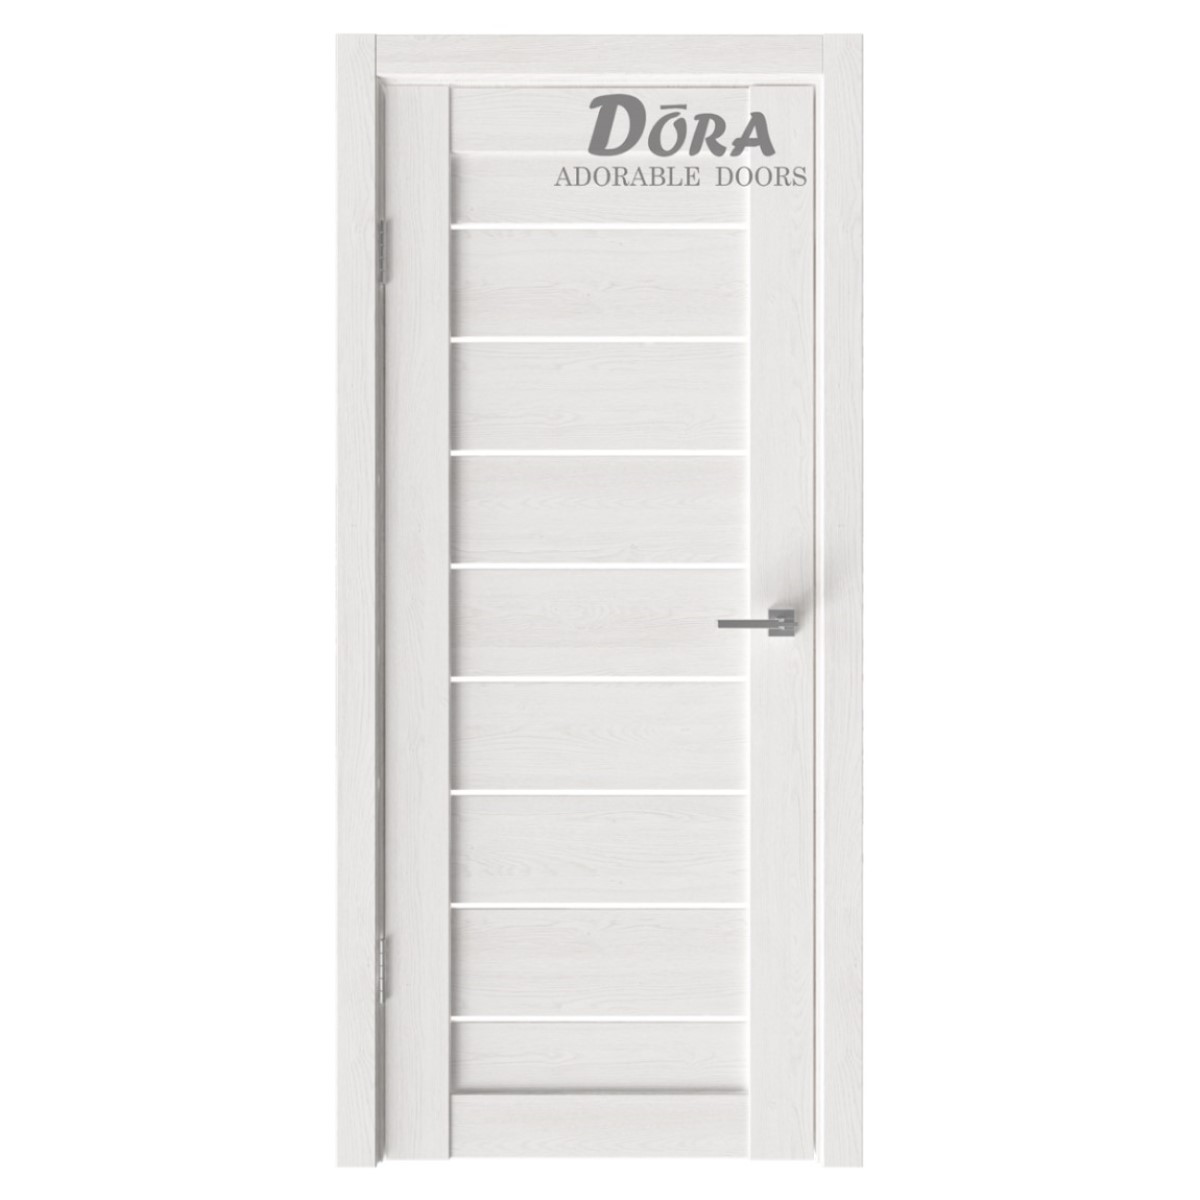 Dora Flash-8, PVC Pārklājuma, Durvju Komplekts - Vērtne, Kārba, 2 Eņģes, Ar Polipropilēna Pārklājumu, Latte, 60x200cm